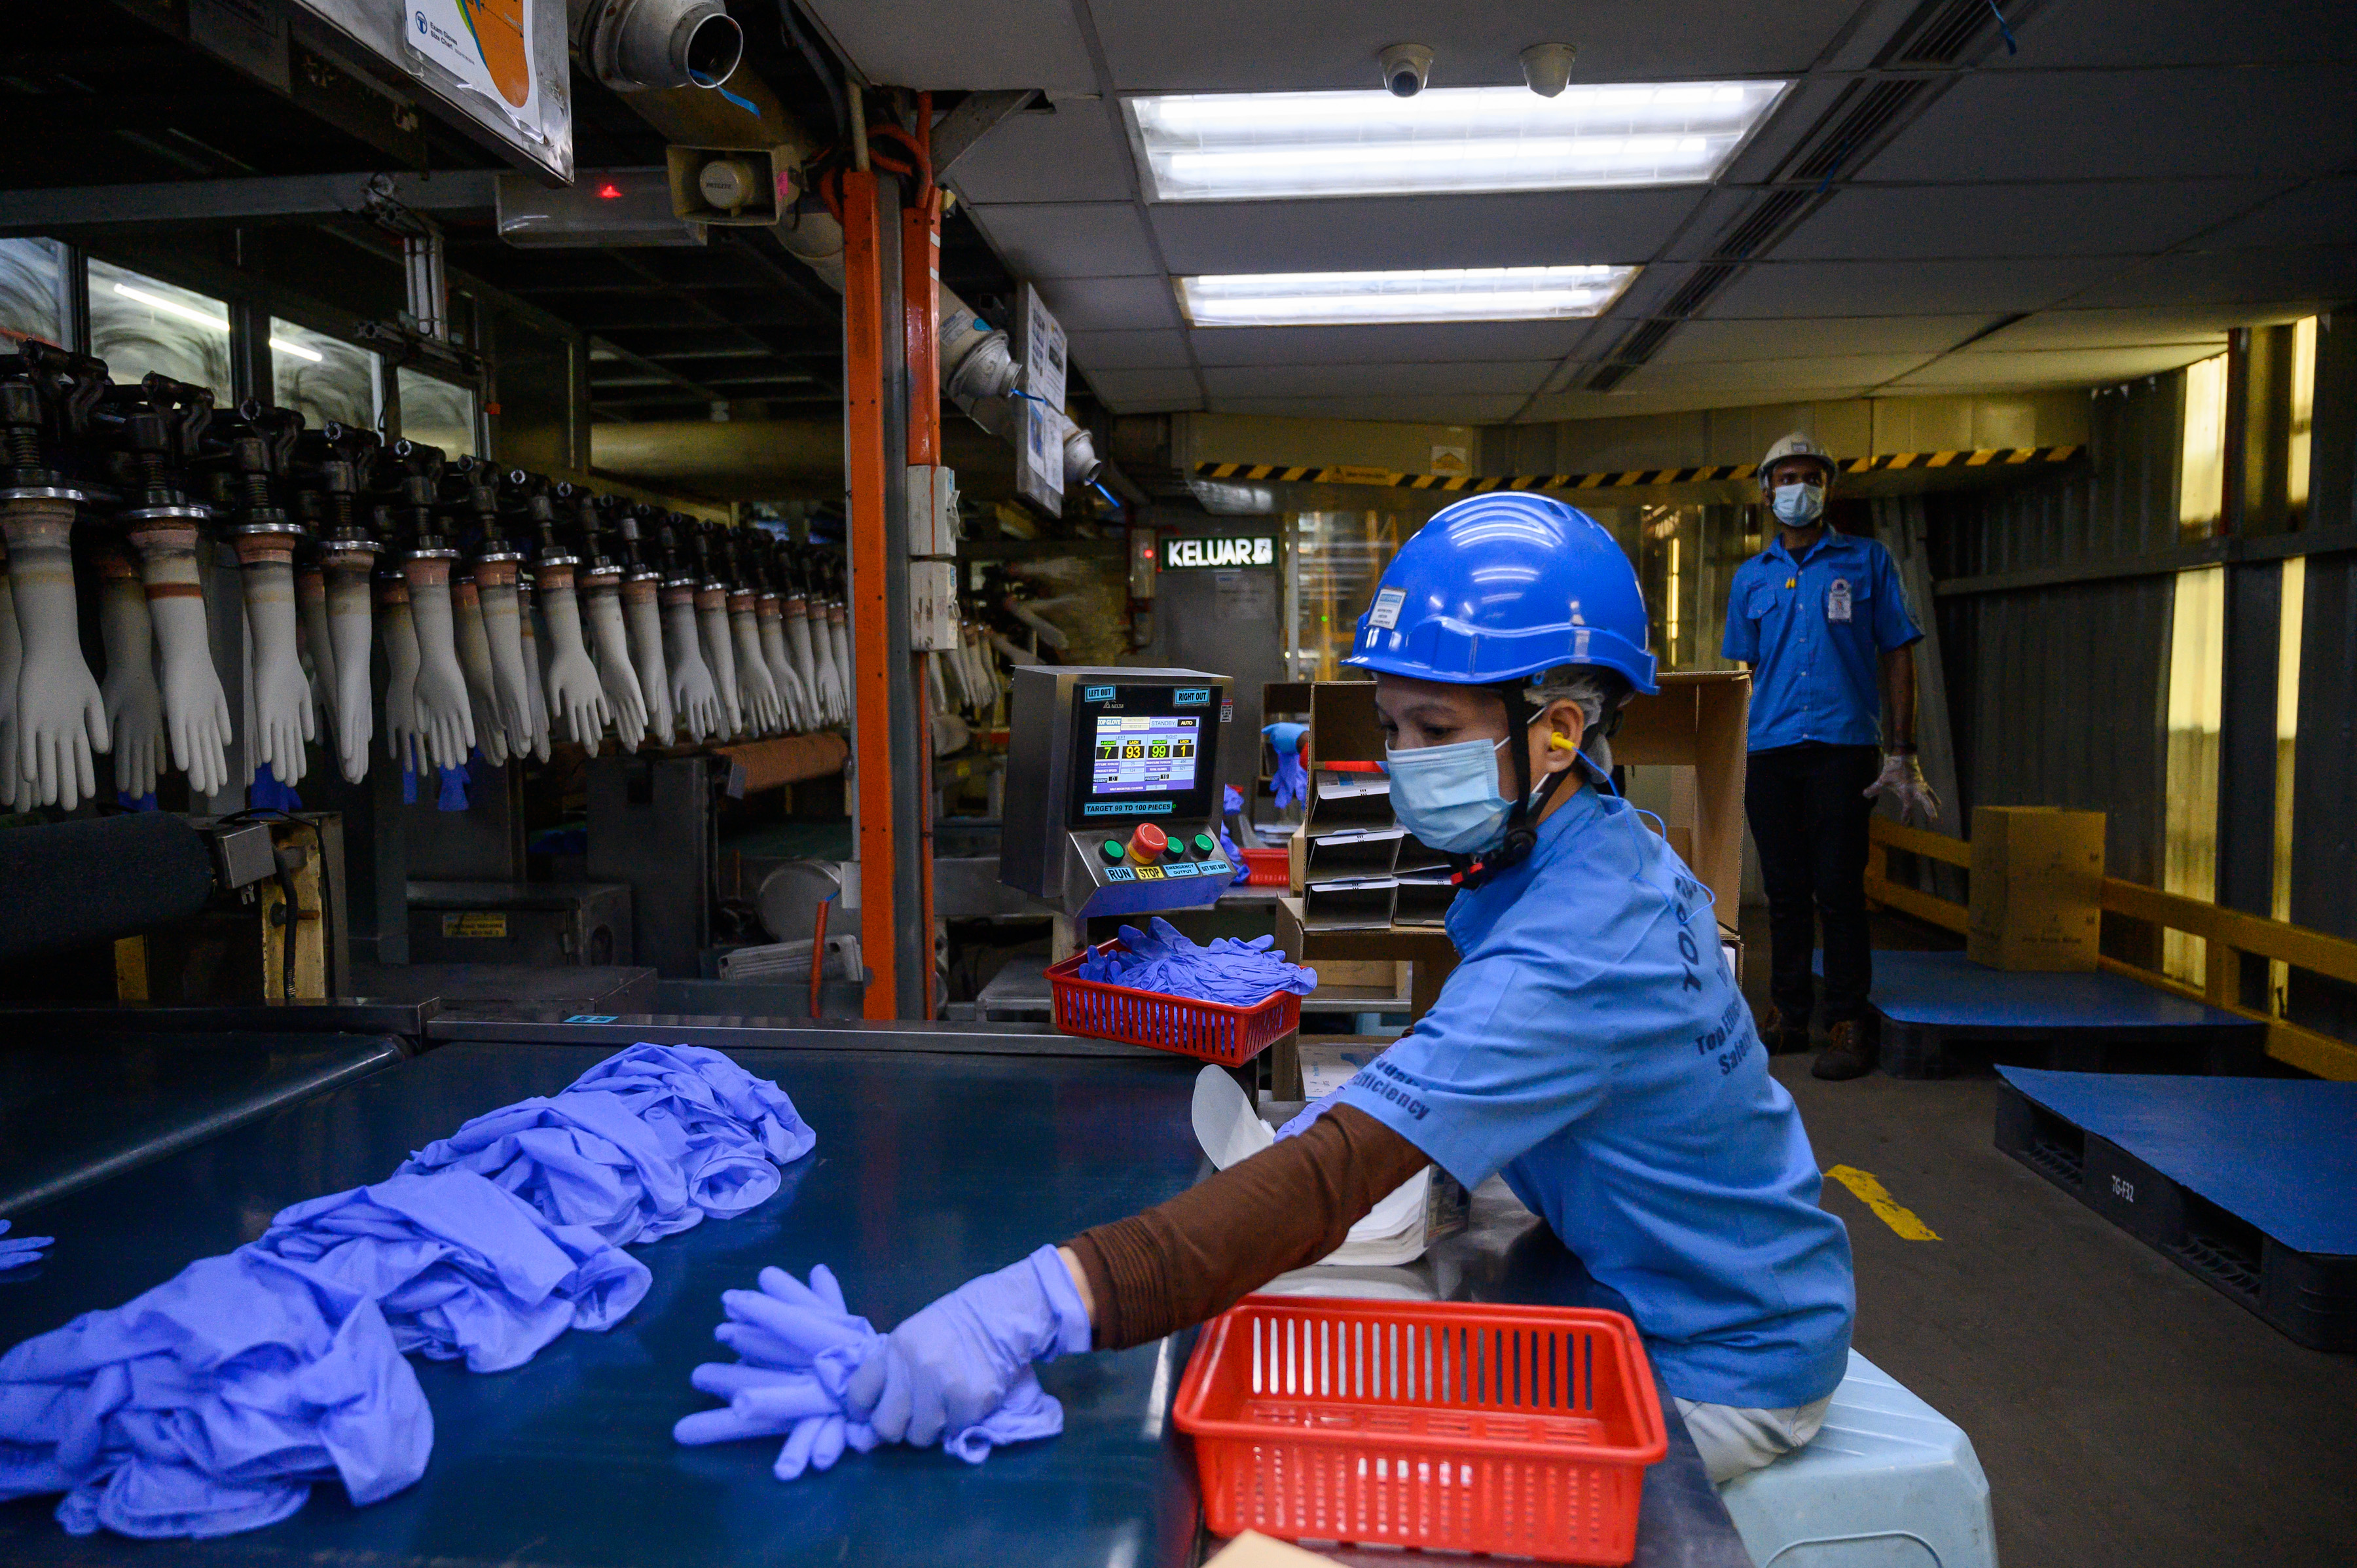 28 gyárat zár be a világ legnagyobb gumikesztyűgyártó cége, mert 2500 koronavírusost találtak